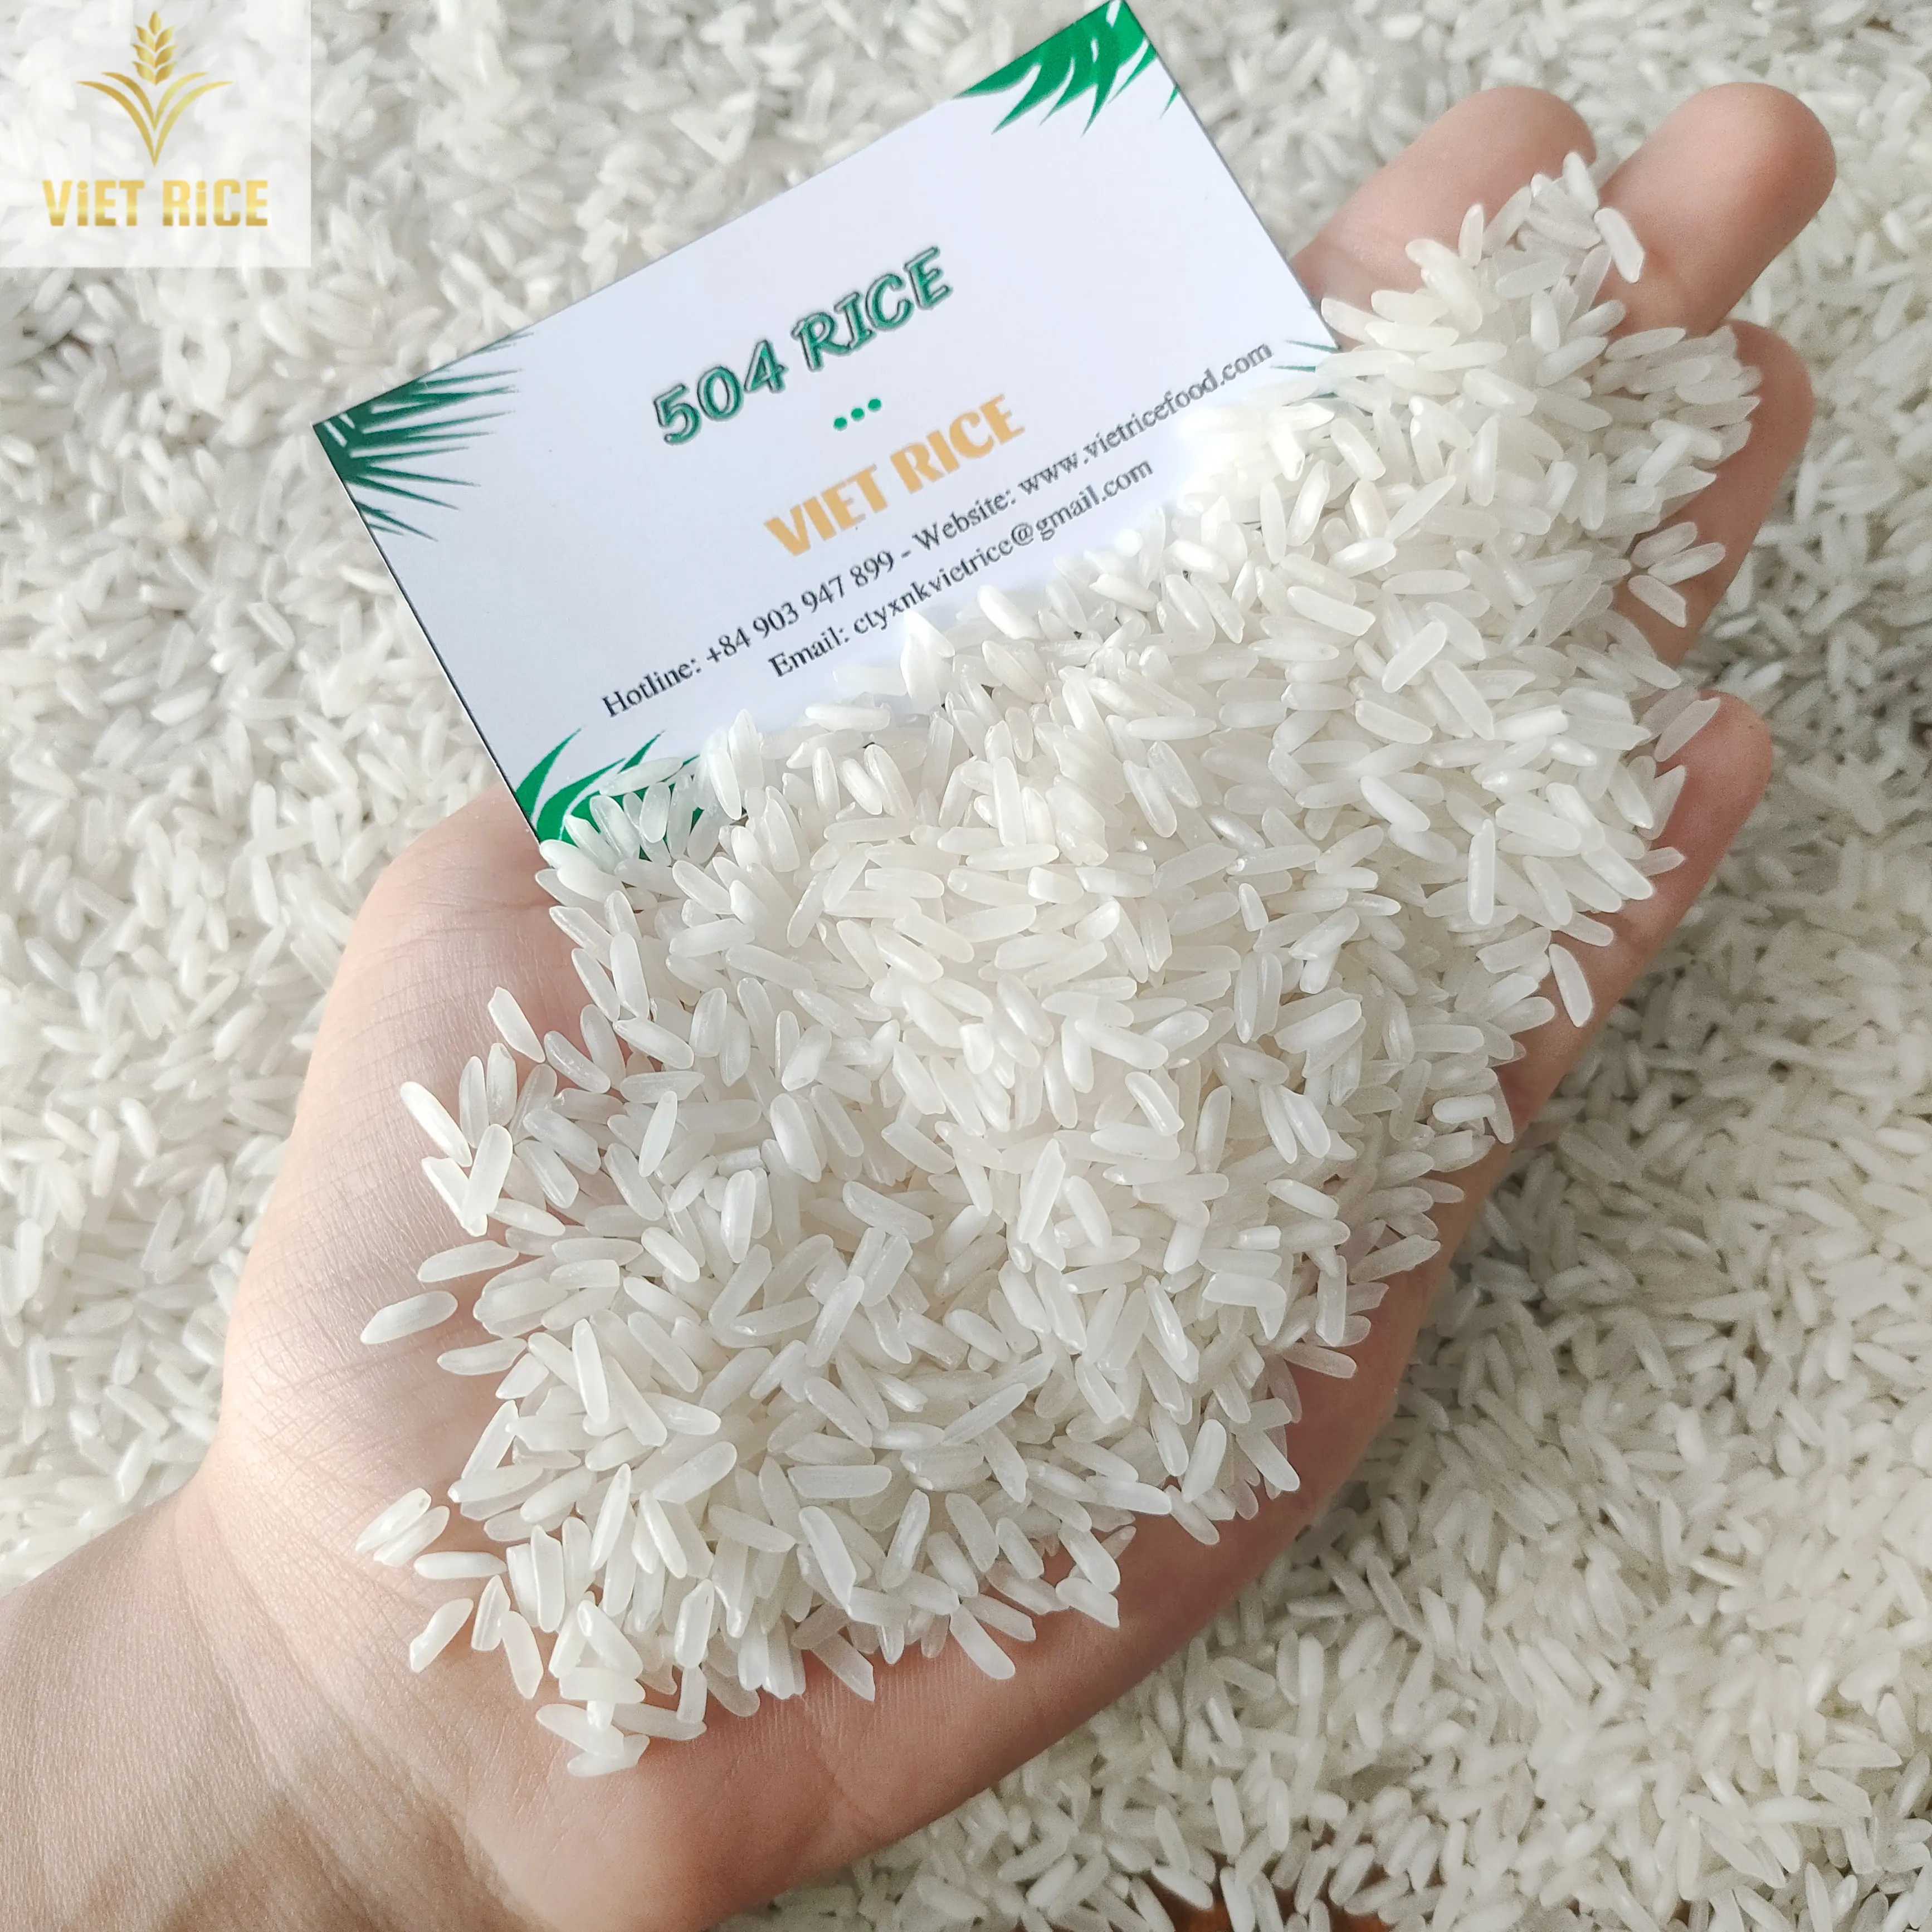 Beras Vietnam (pemasok terbaik, 504 beras) baik di domestik, beras putih internasional dengan kualitas unggul dan kuantitas dijual